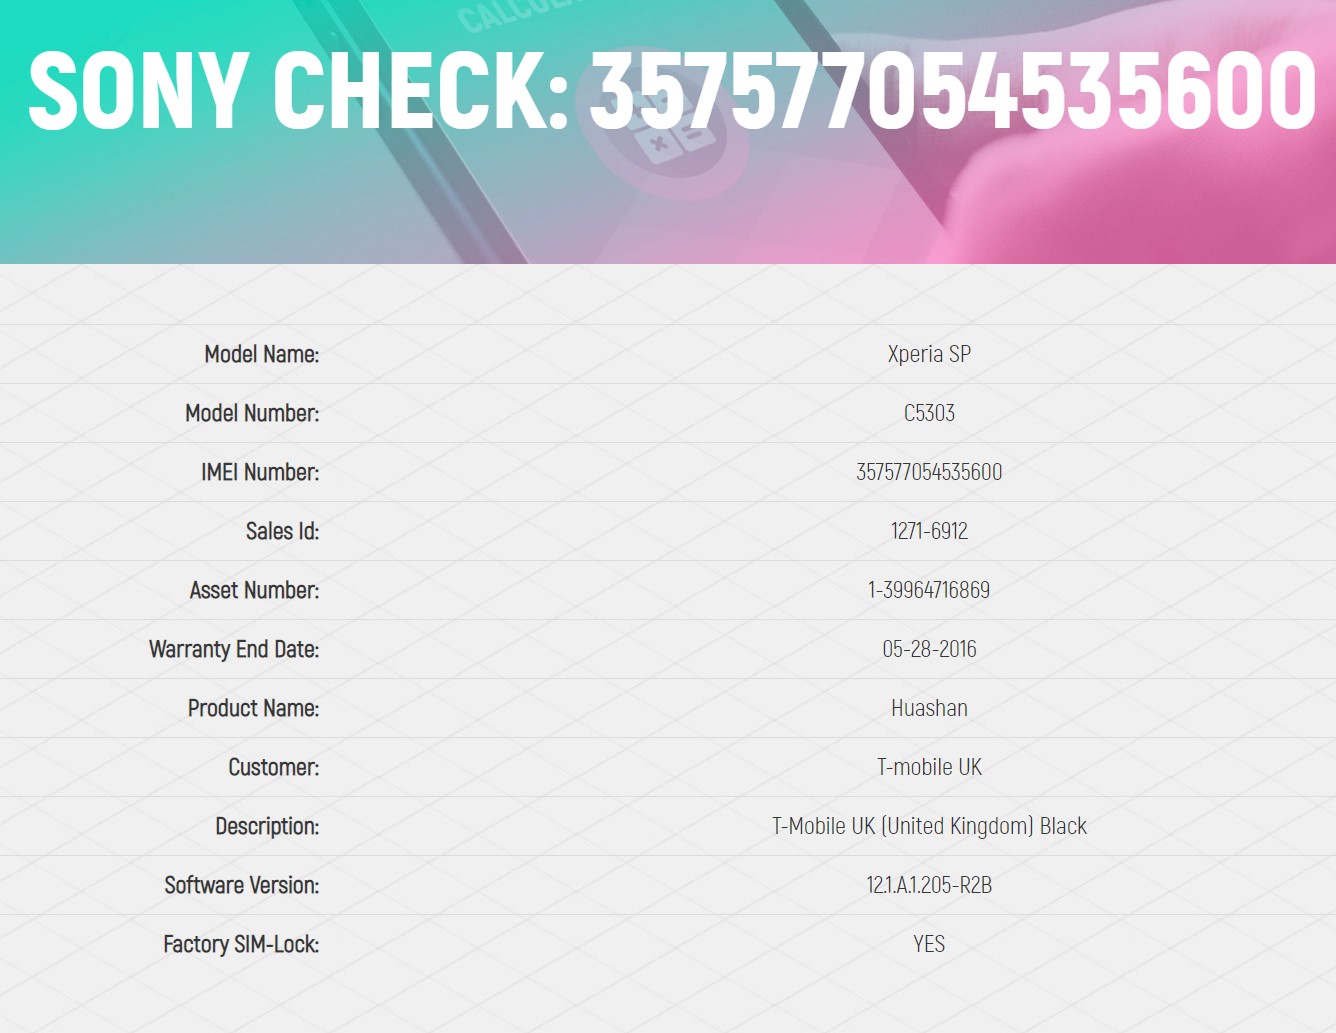 SONY Warranty Info Check